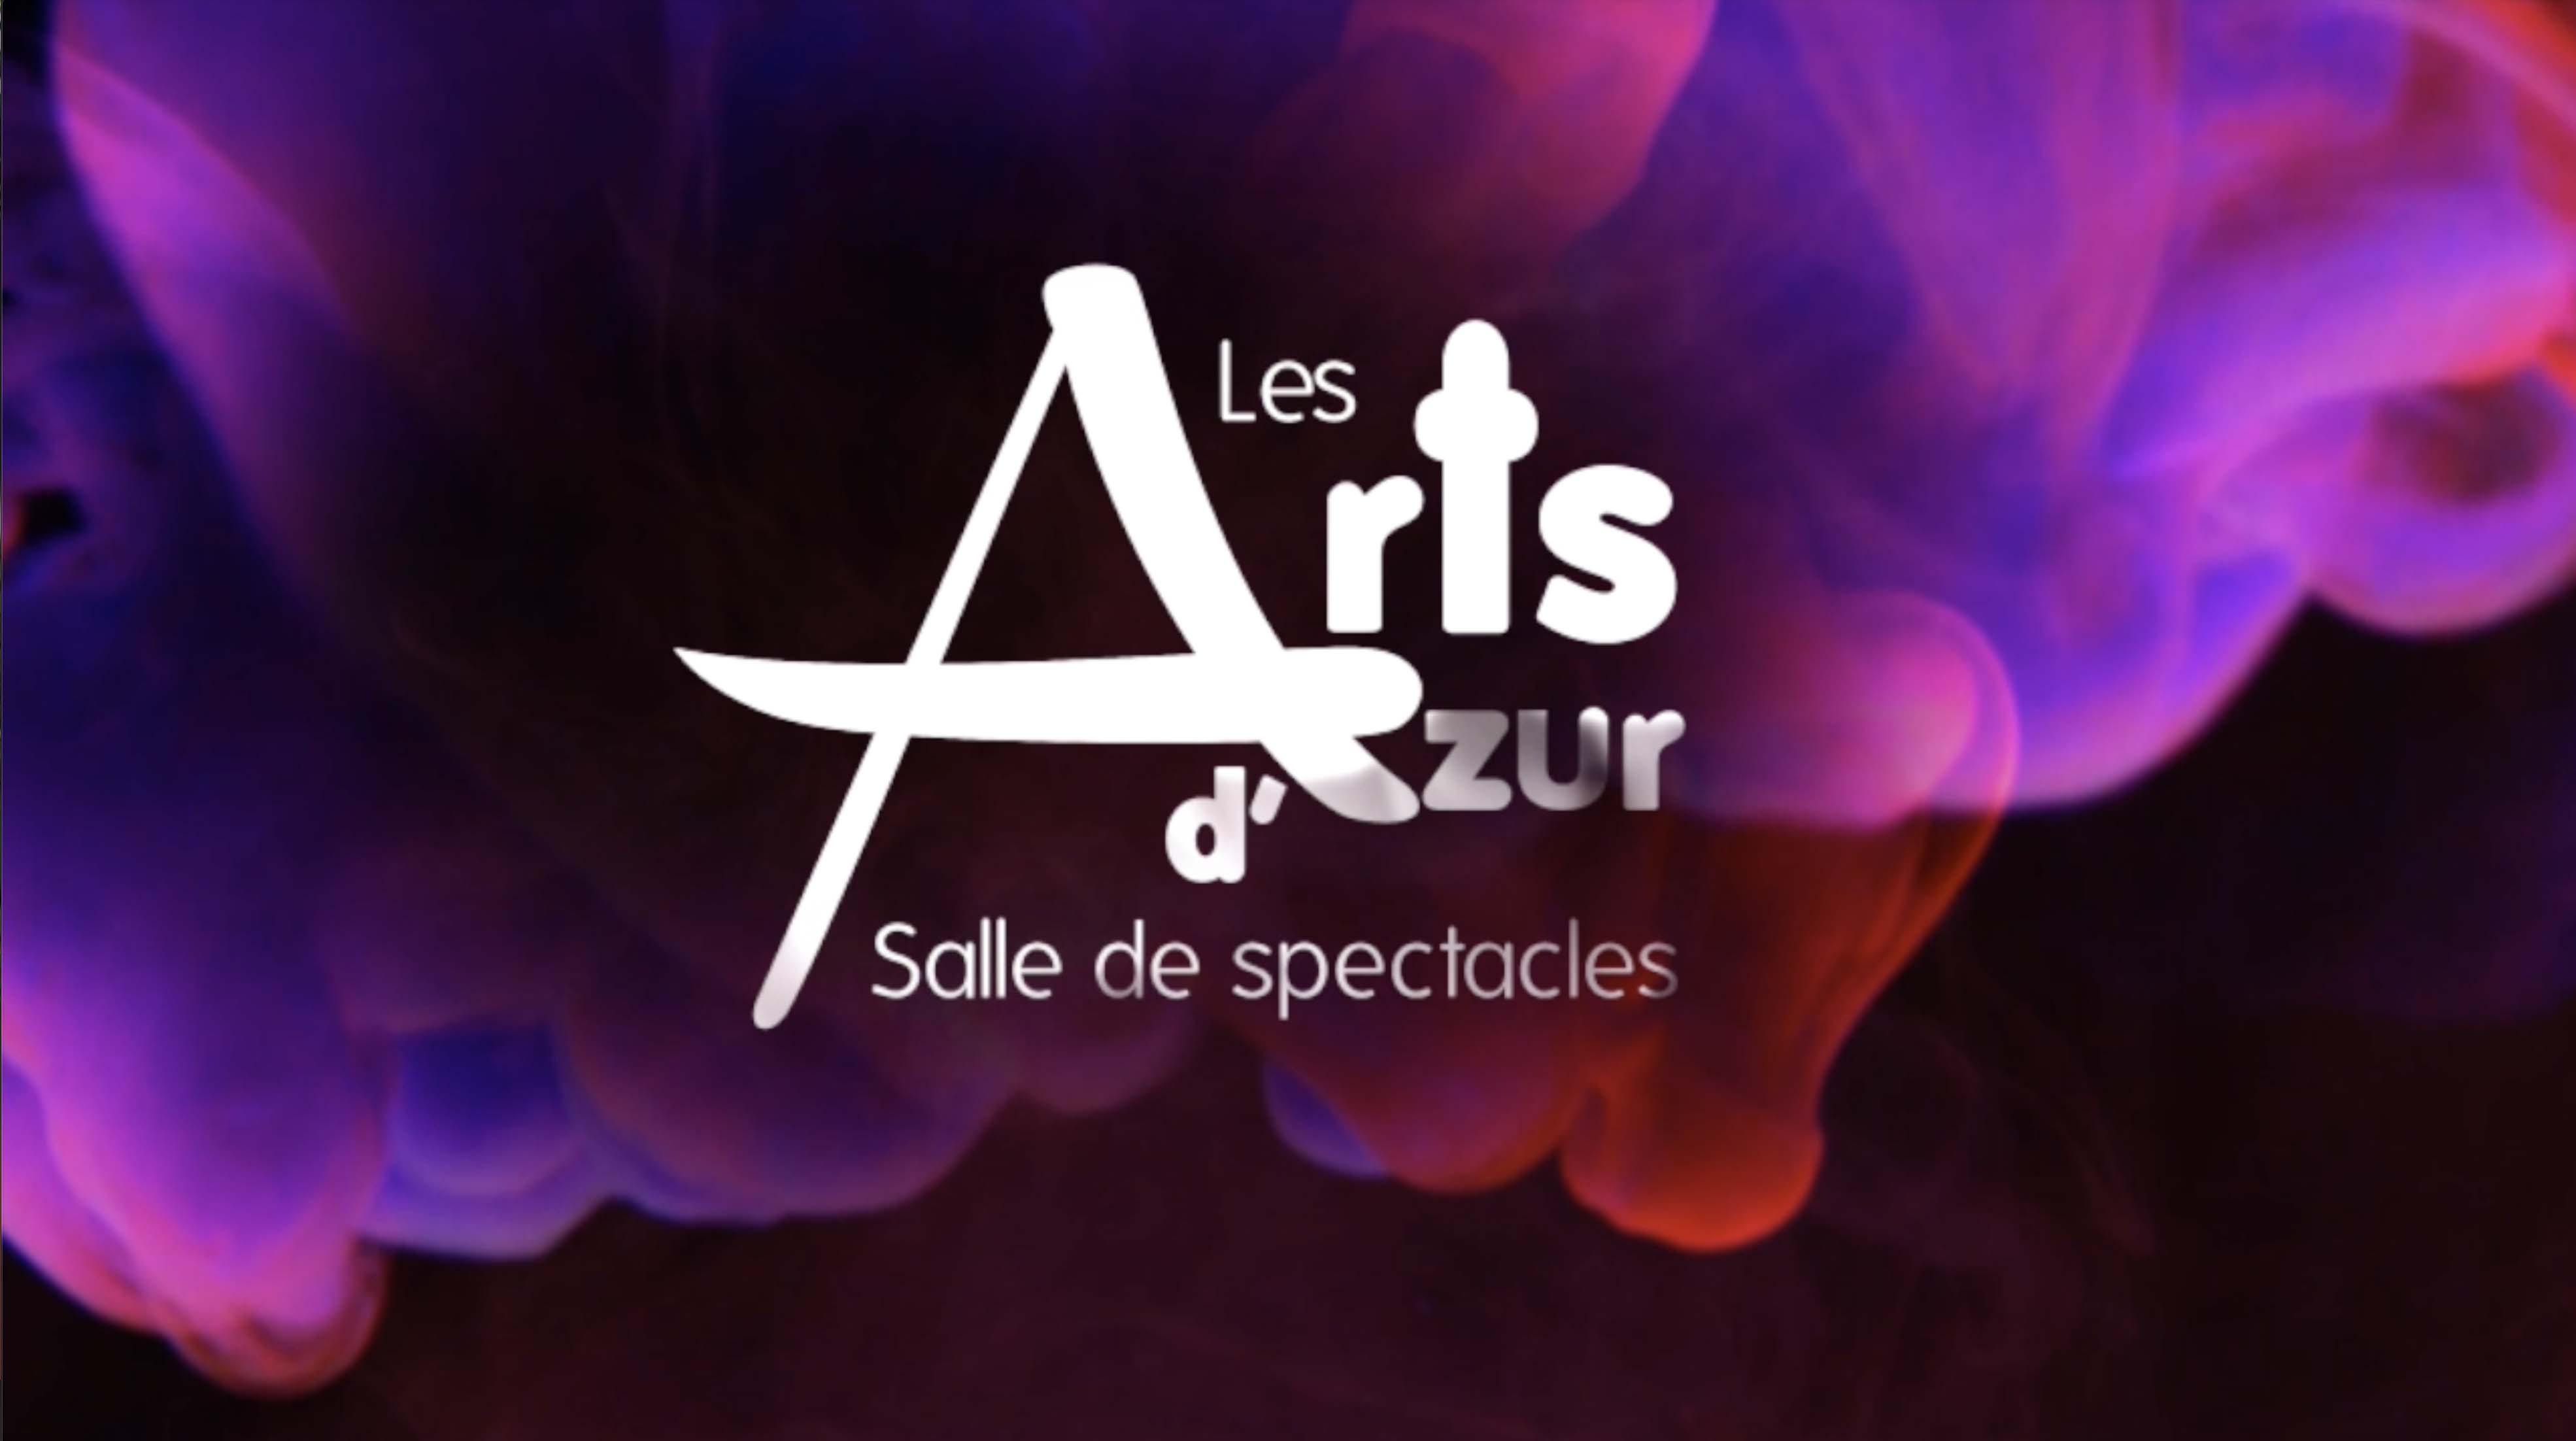 Salle des Arts D'Azur Tickets